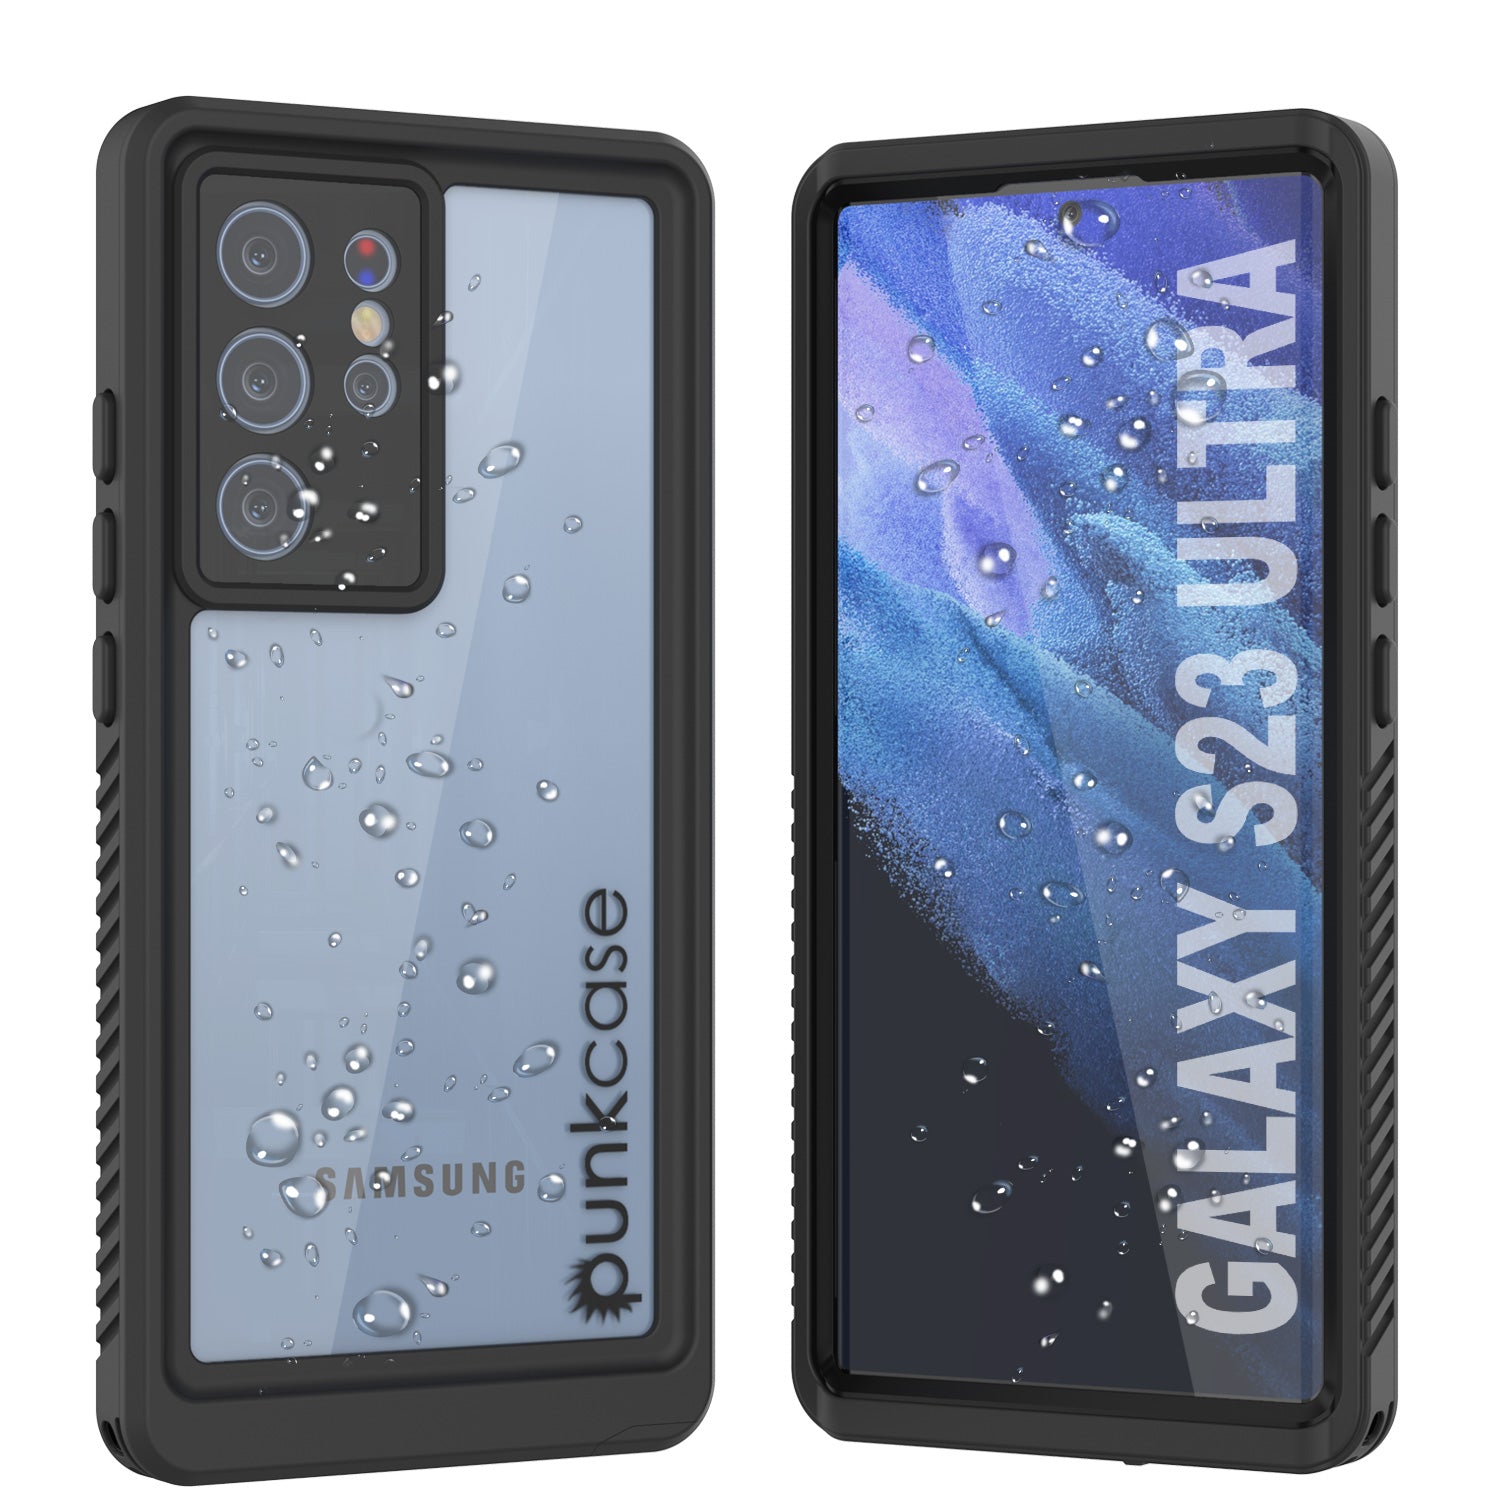 galaxy s4 mini case waterproof